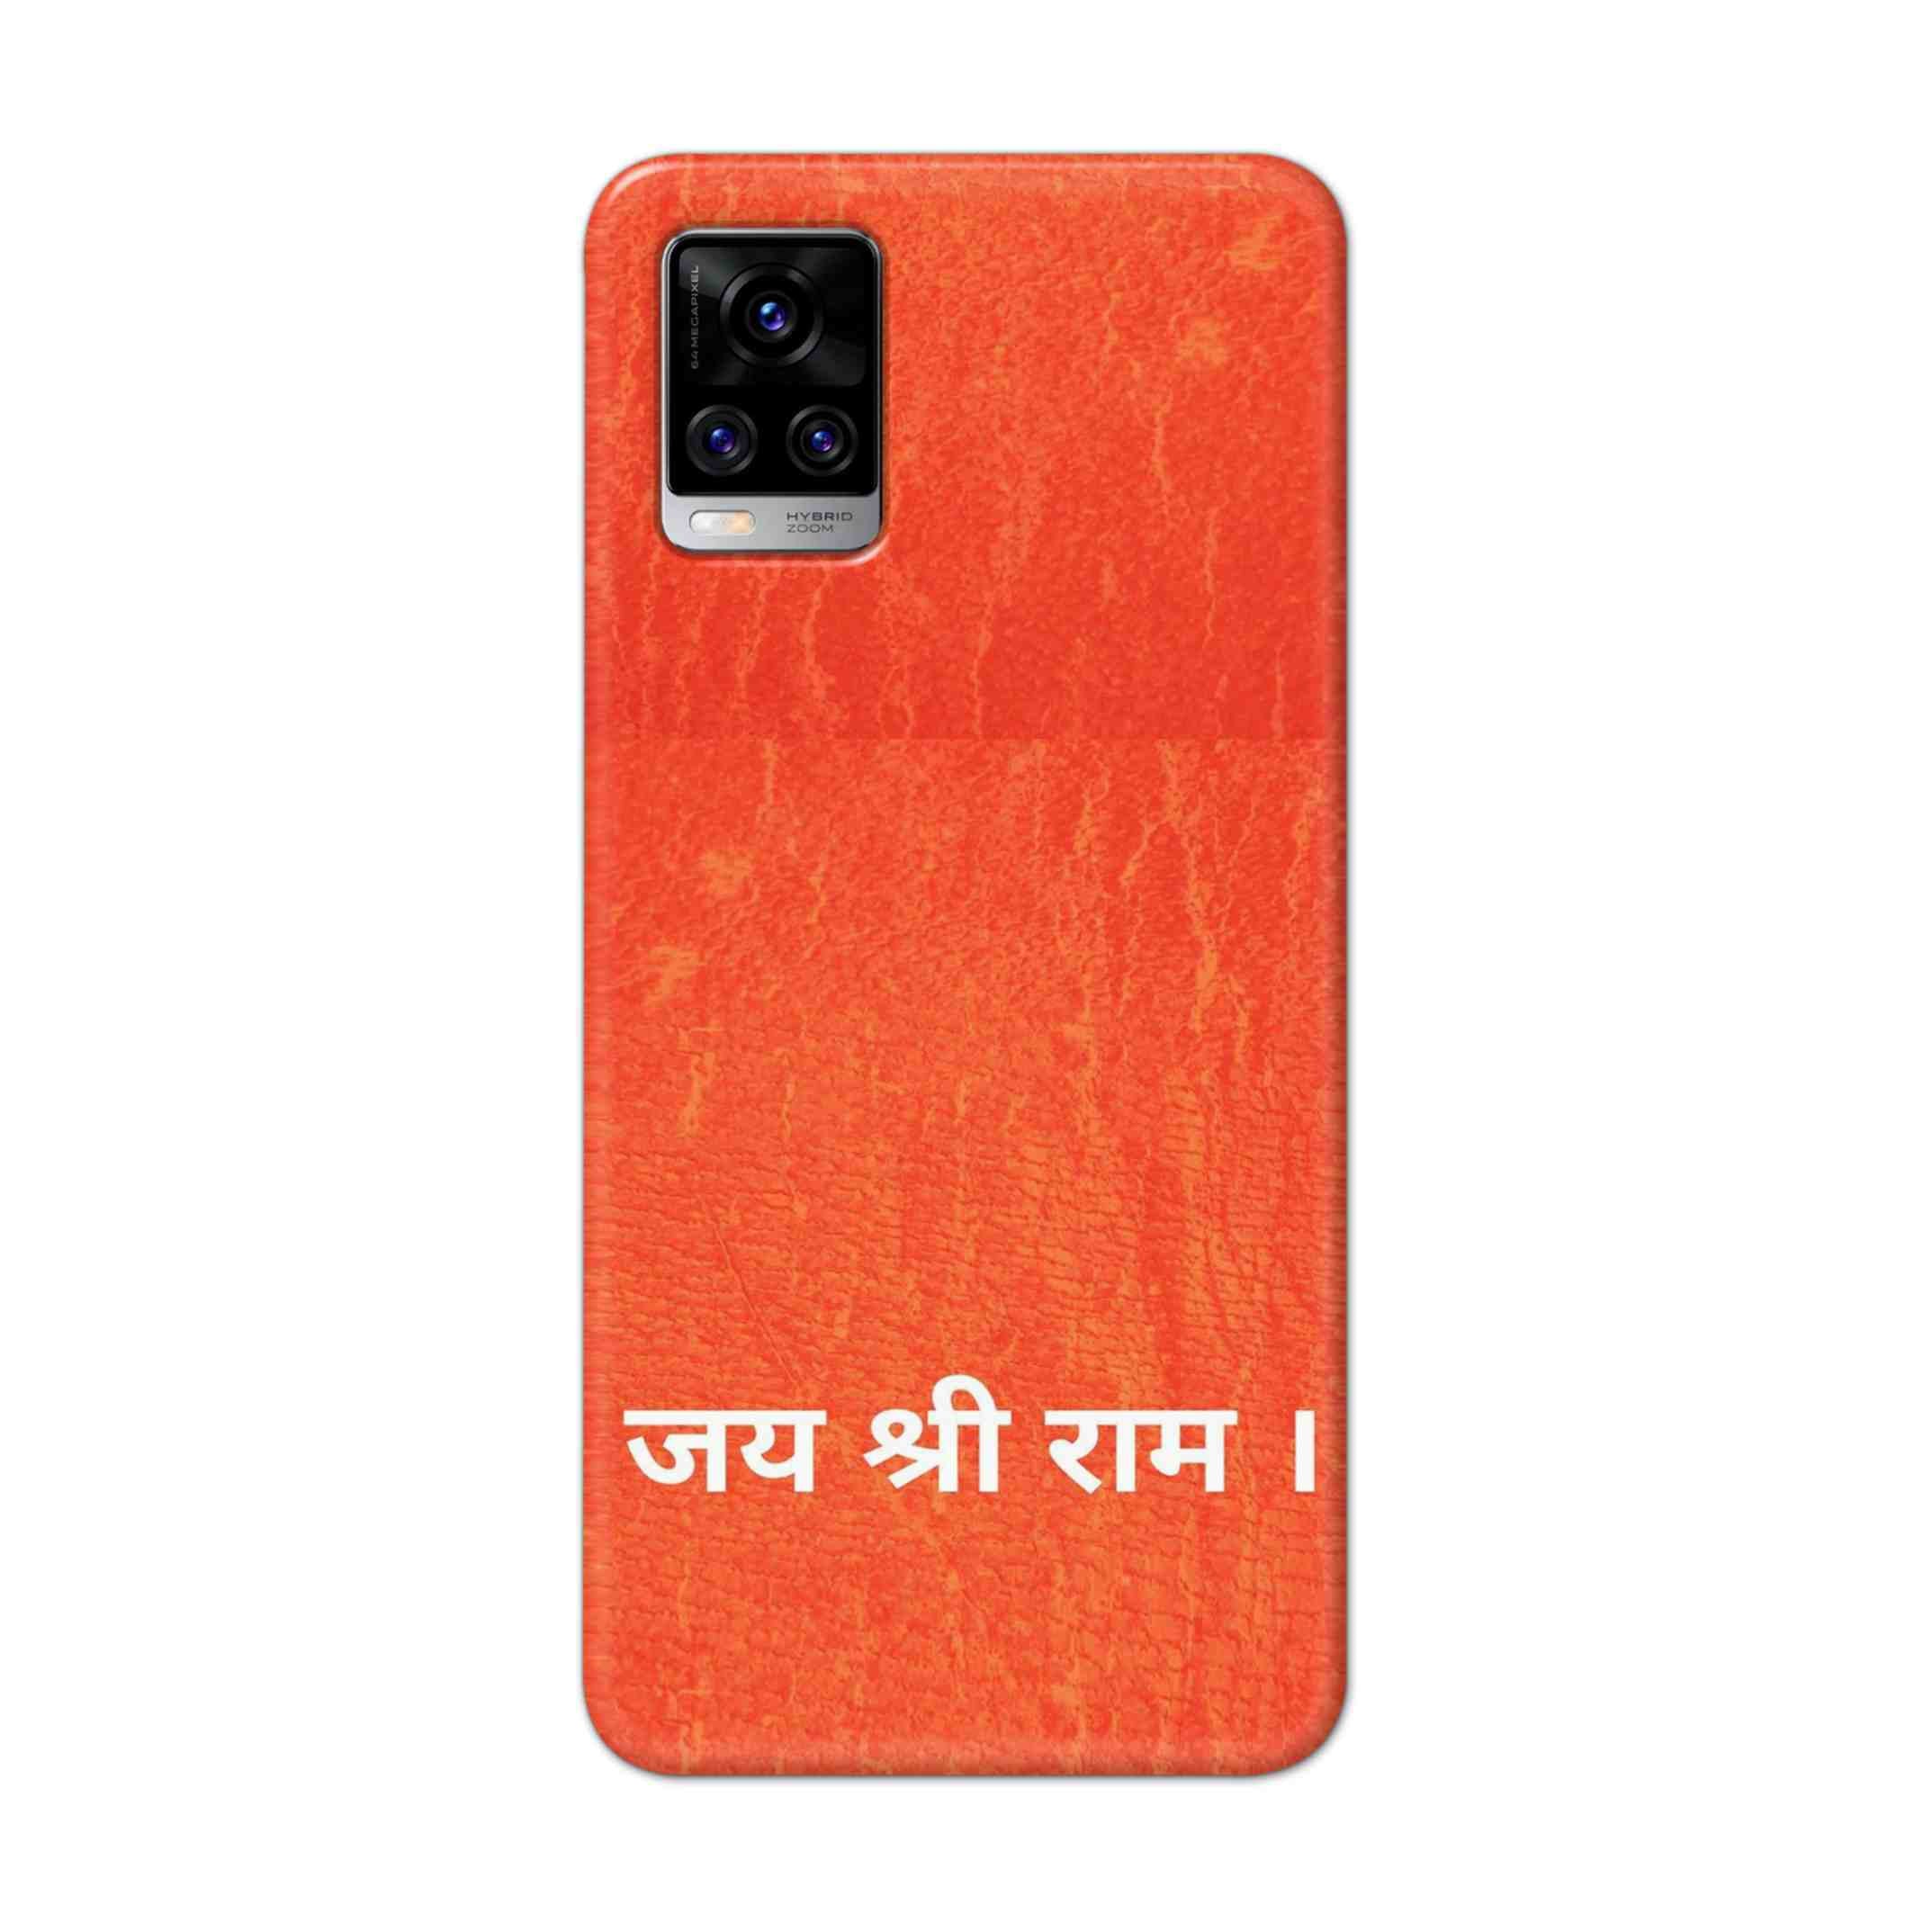 Buy Jai Shree Ram Hard Back Mobile Phone Case Cover For Vivo V20 Pro Online